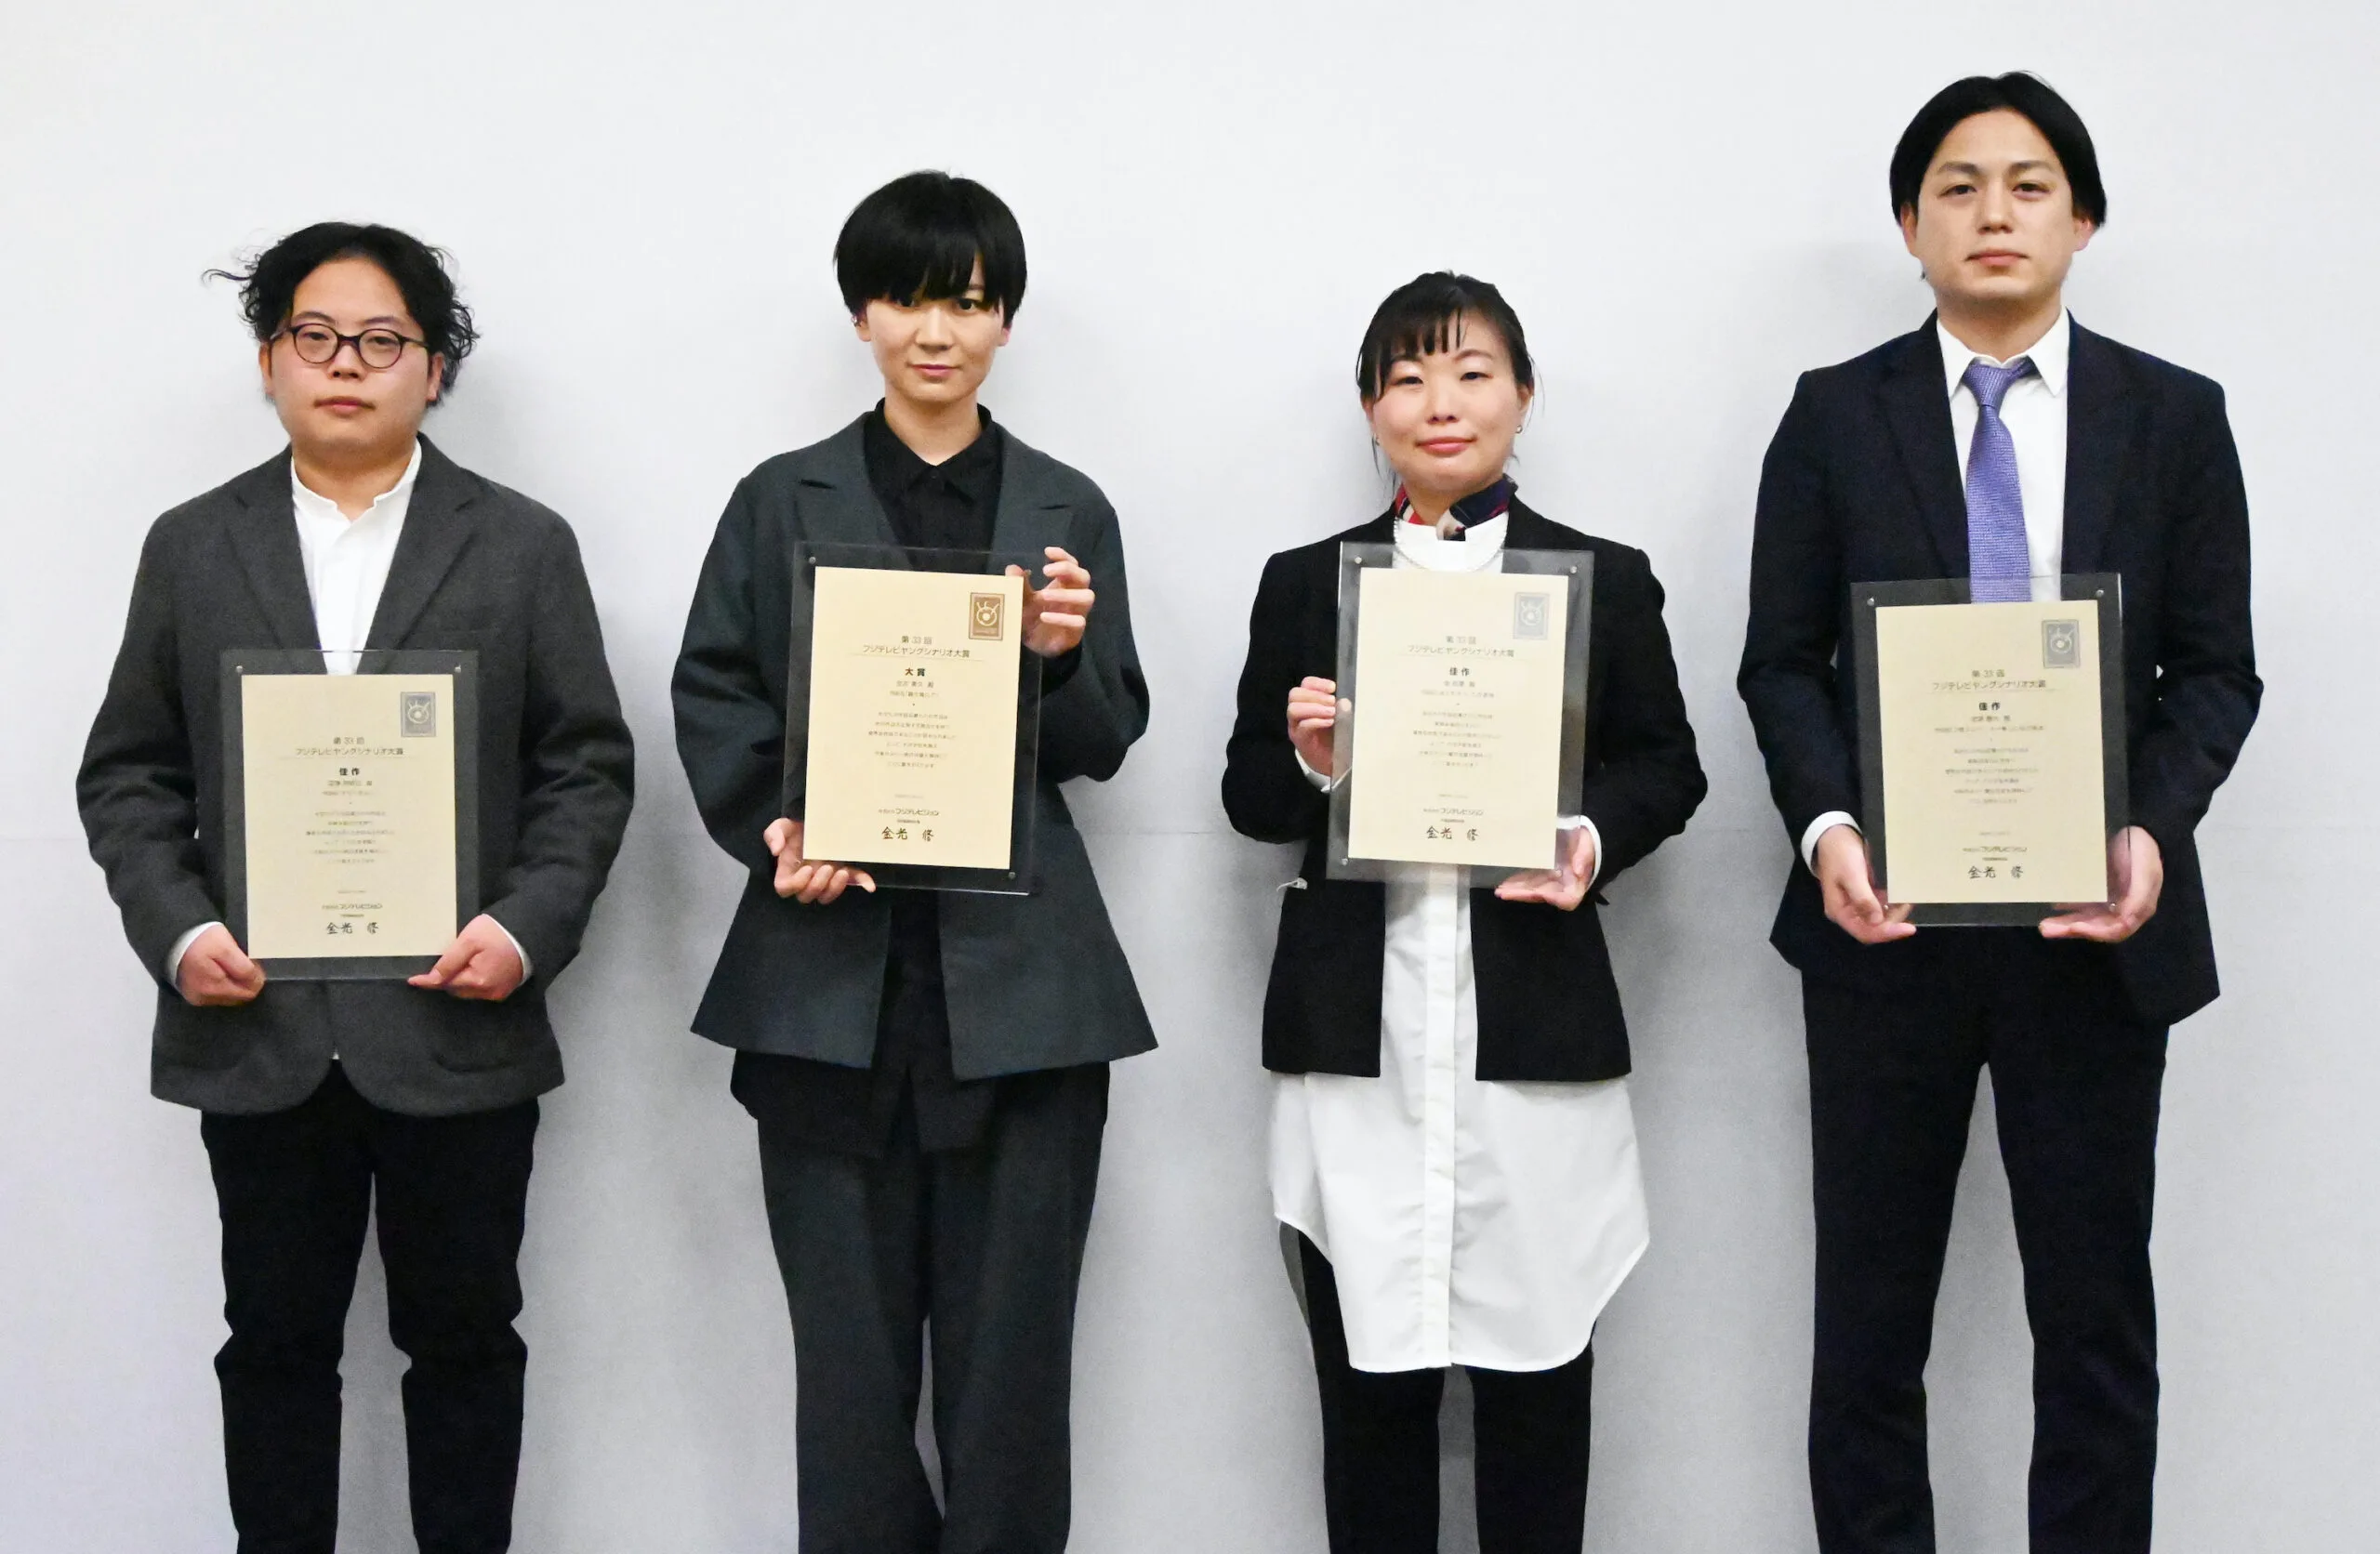 左から）深澤伊吹己さん、生方美久さん（大賞受賞）、金民愛さん、北浦勝大さん